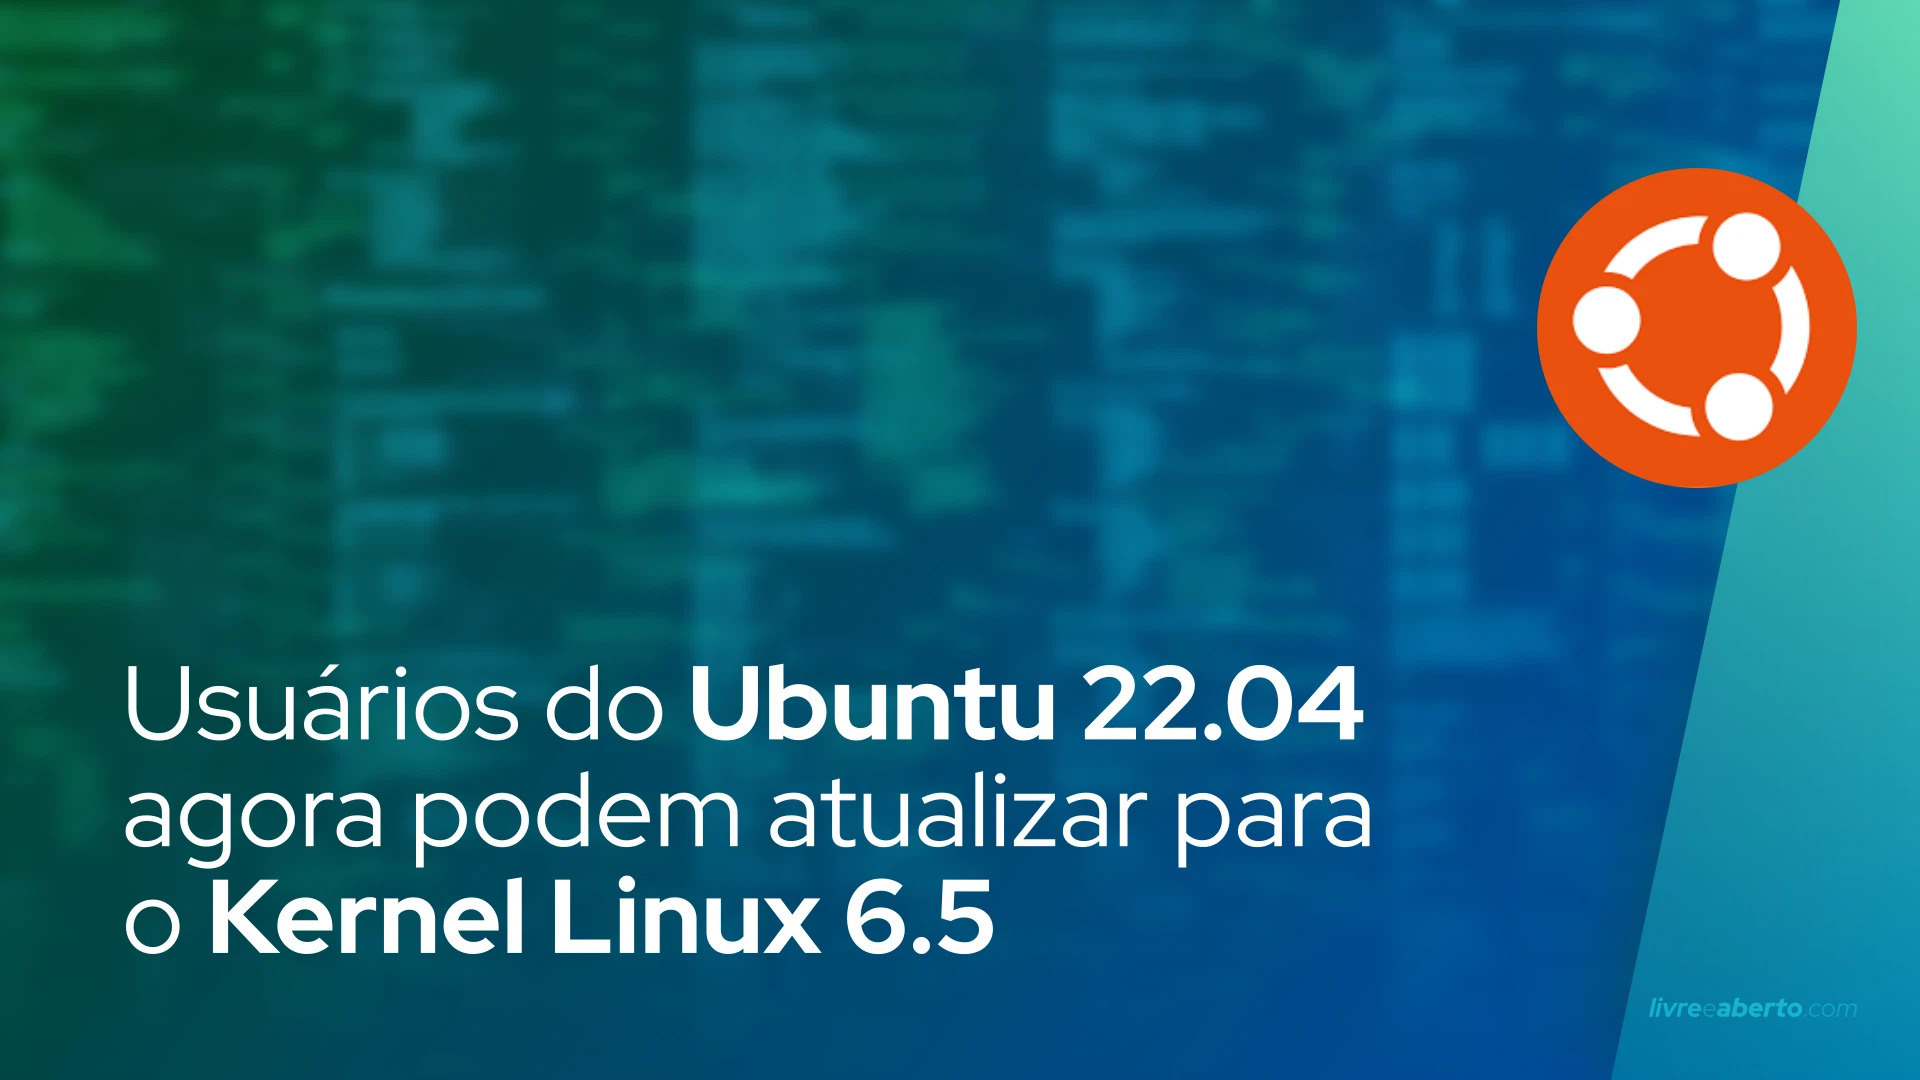 Usuários do Ubuntu 22.04 agora podem atualizar para o Kernel Linux 6.5